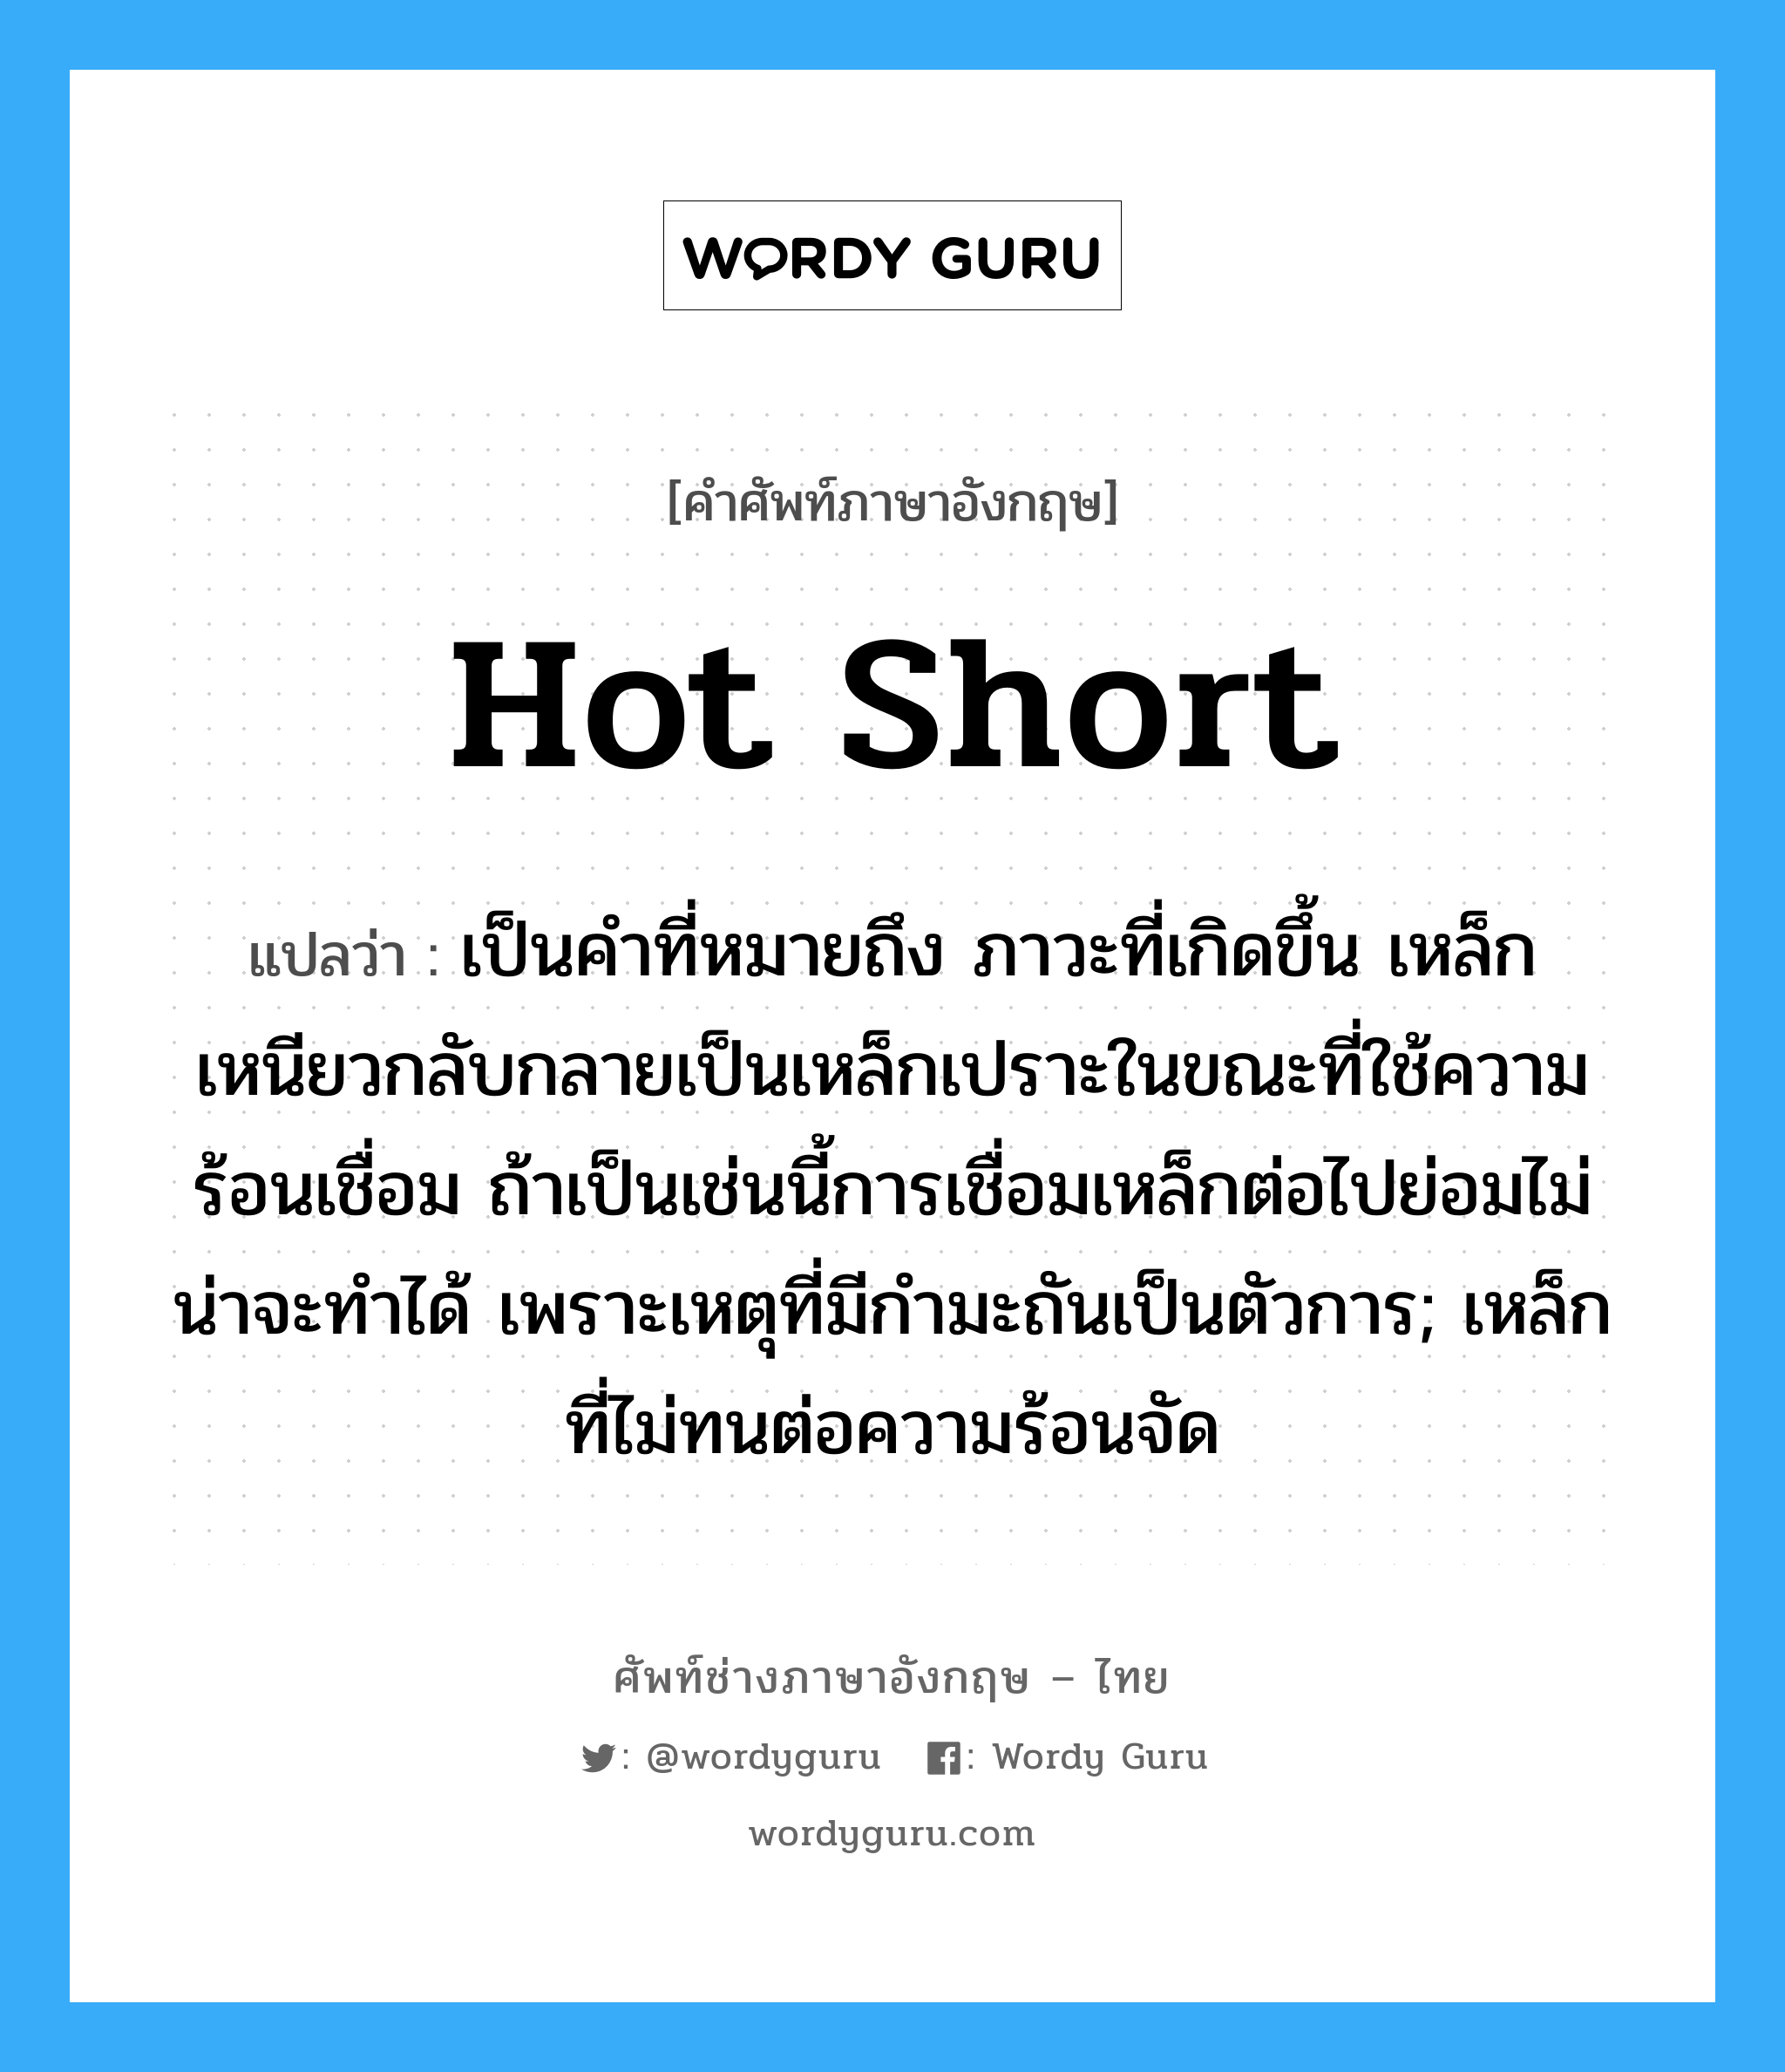 hot short แปลว่า?, คำศัพท์ช่างภาษาอังกฤษ - ไทย hot short คำศัพท์ภาษาอังกฤษ hot short แปลว่า เป็นคำที่หมายถึง ภาวะที่เกิดขึ้น เหล็กเหนียวกลับกลายเป็นเหล็กเปราะในขณะที่ใช้ความร้อนเชื่อม ถ้าเป็นเช่นนี้การเชื่อมเหล็กต่อไปย่อมไม่น่าจะทำได้ เพราะเหตุที่มีกำมะถันเป็นตัวการ; เหล็กที่ไม่ทนต่อความร้อนจัด